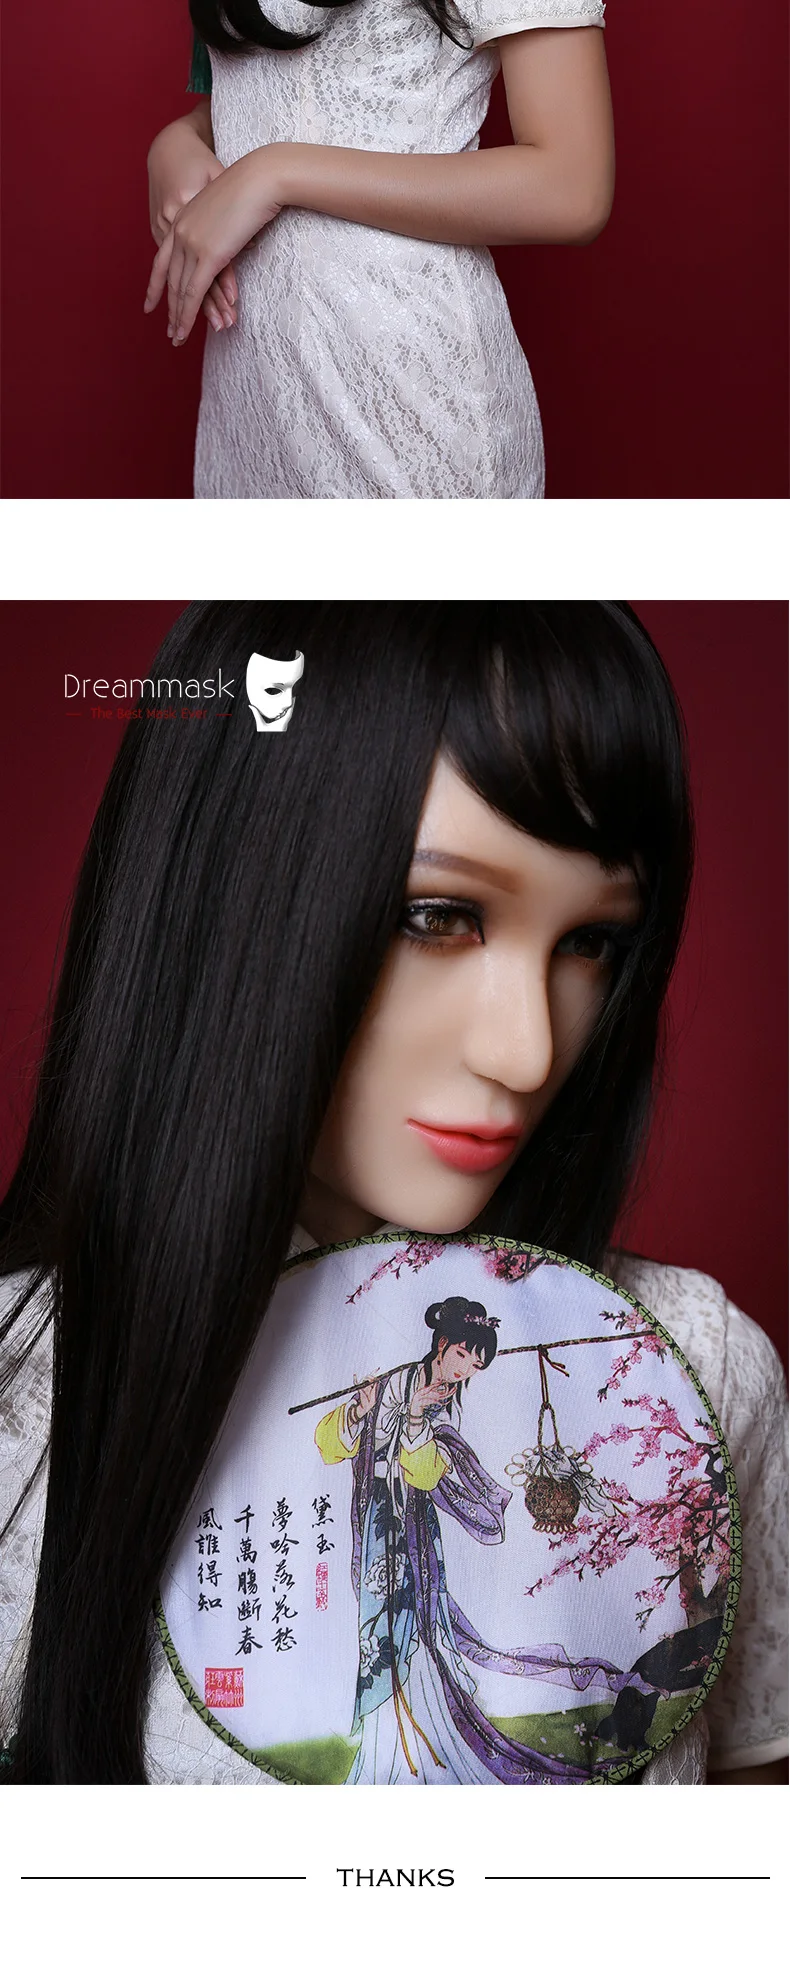 Роза) качество ручной работы мягкий силиконовый половина лица женский кроссдресс DMS маска транссексуал Drag queen маска кигуруми